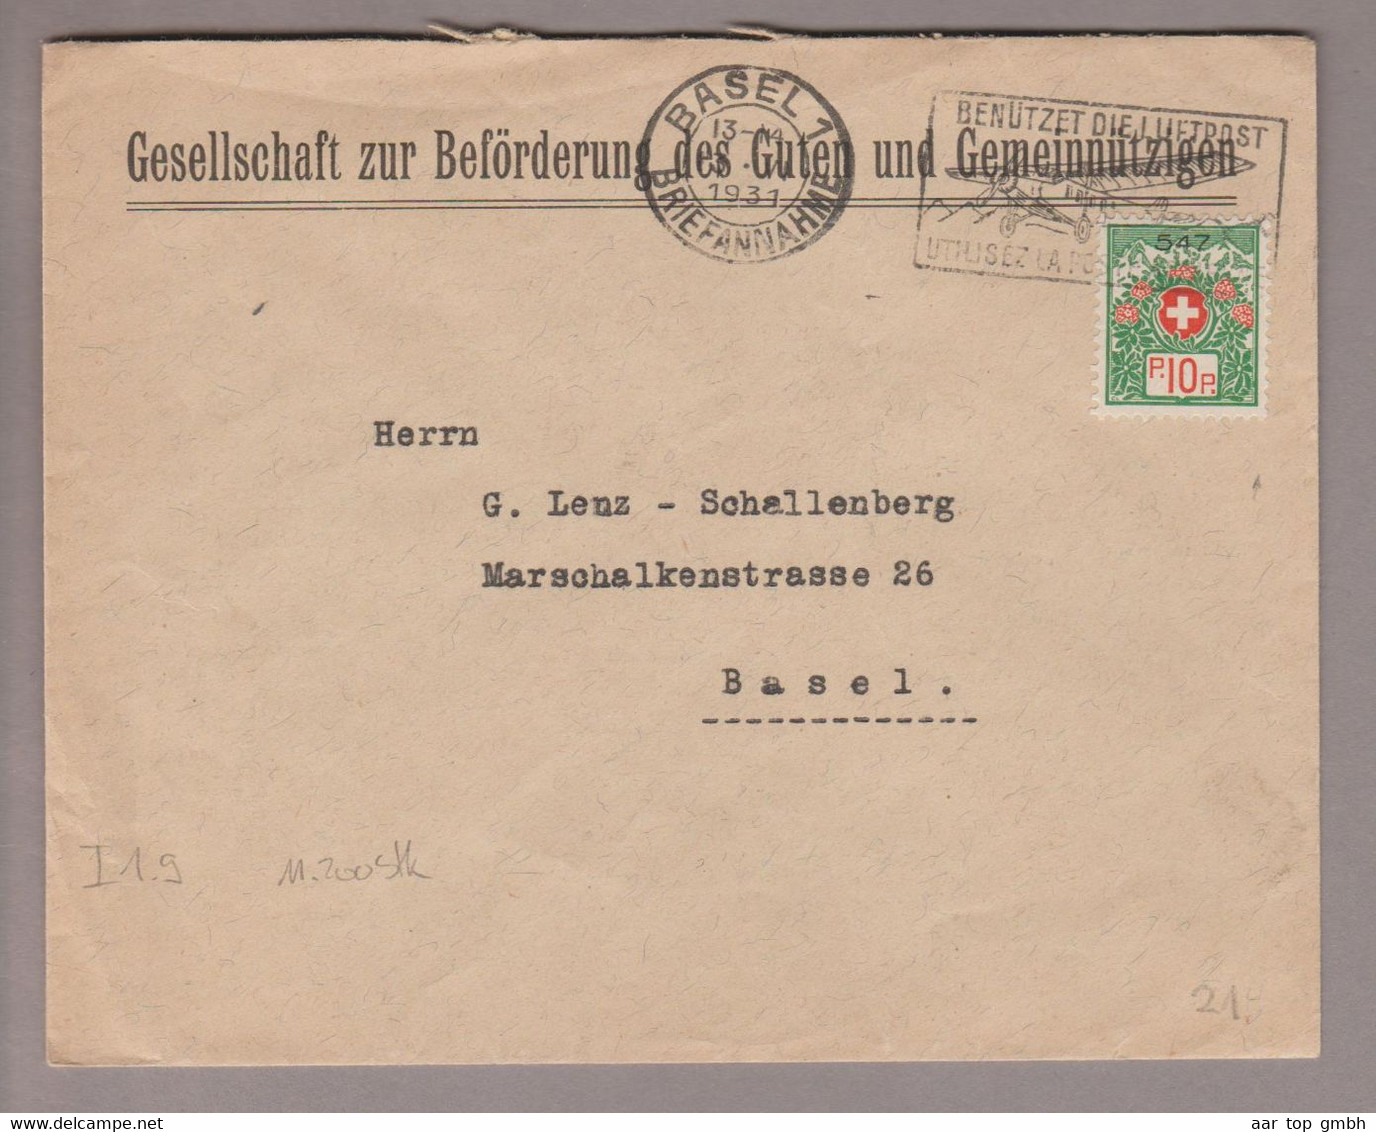 CH Portofreiheit Zu#9 10Rp. GR#547 Brief 1931-06-03 Basel1 Gesellschaft Zur Beförderung Des Guten+Gemeinnützigen - Vrijstelling Van Portkosten